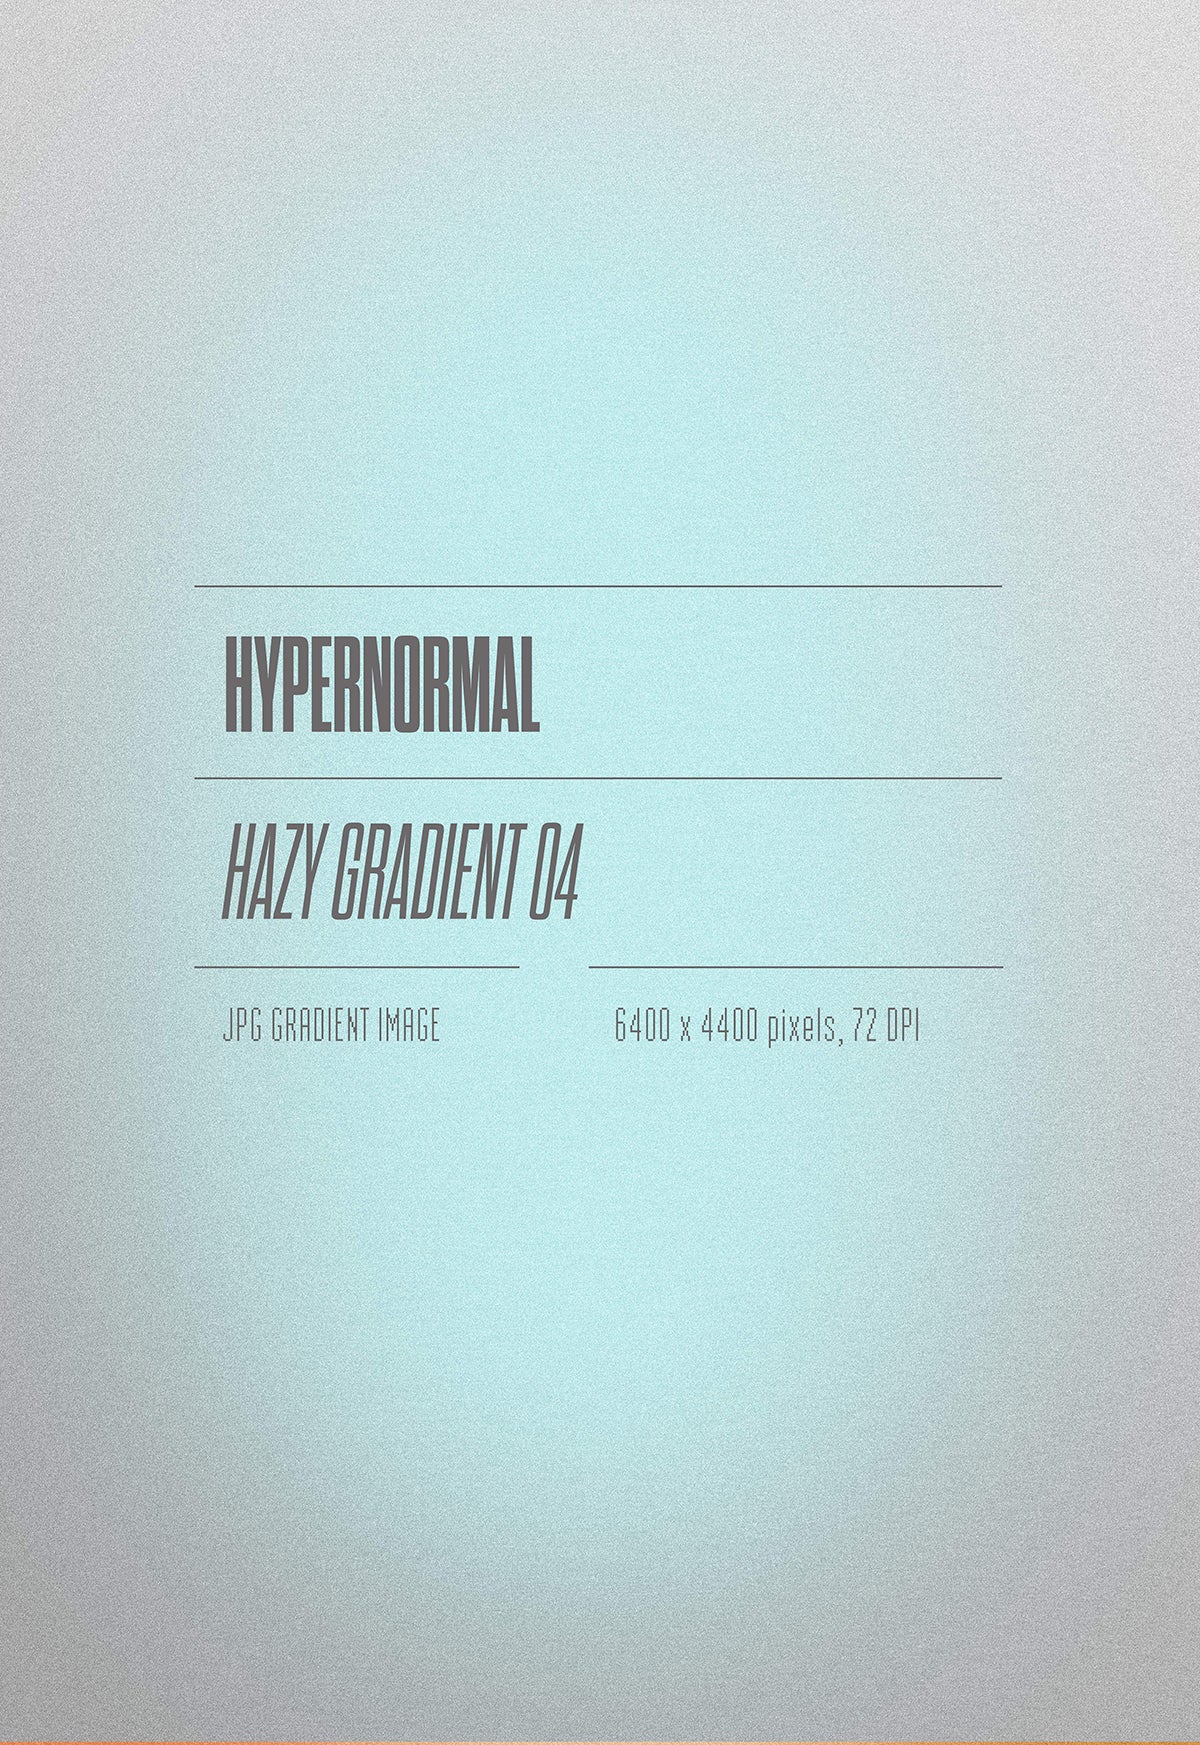 Hypernormal Hazy Gradient Pack 01